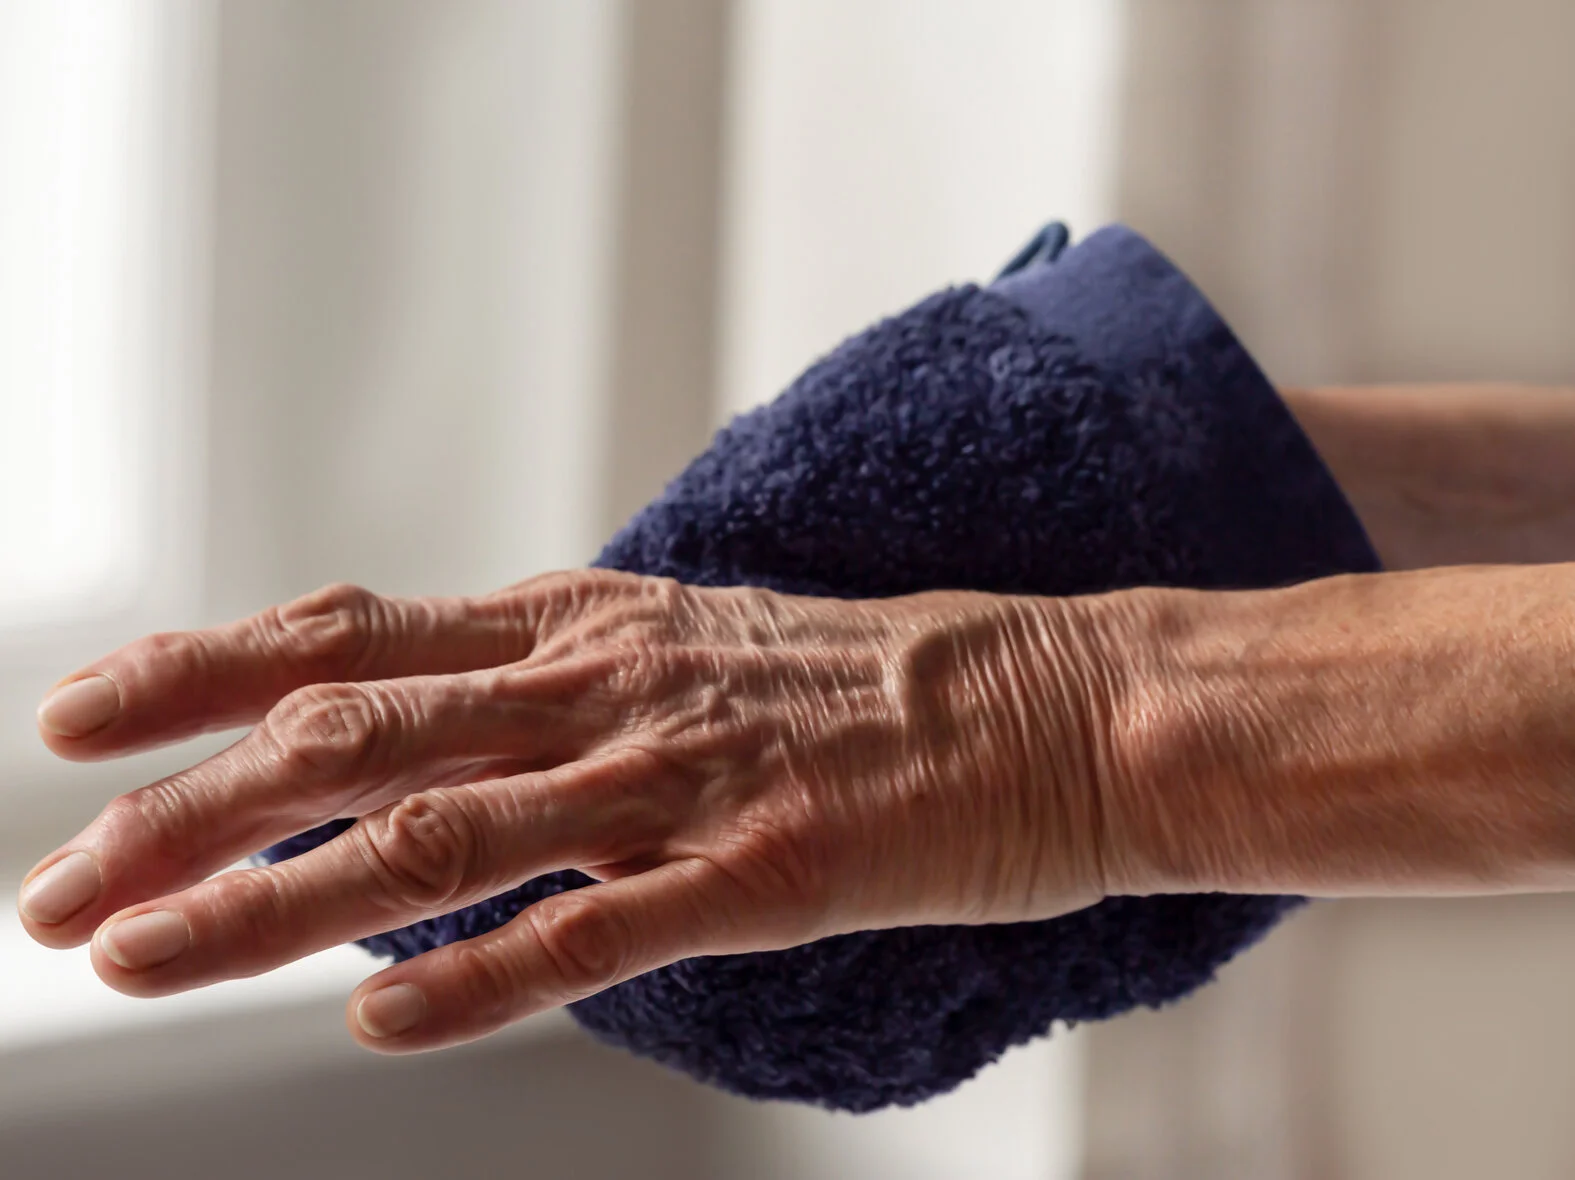 Hautinspektion bei der Körperpflege: Hand wird gewaschen